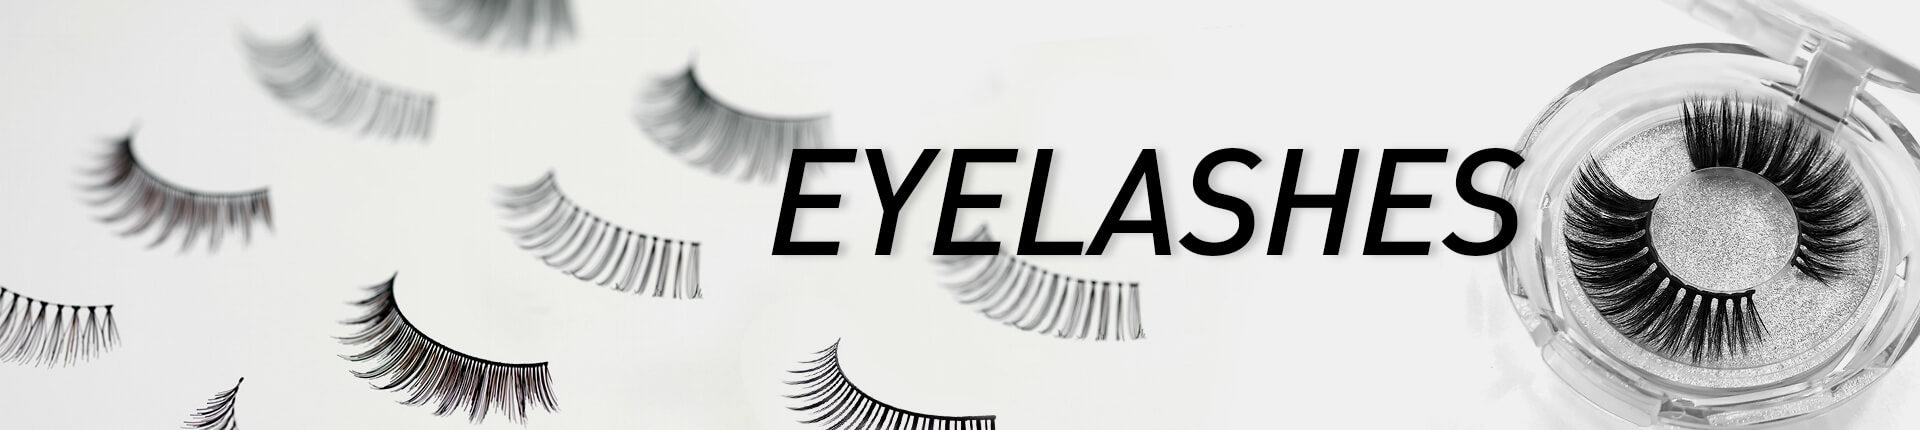 Eyelashes Products